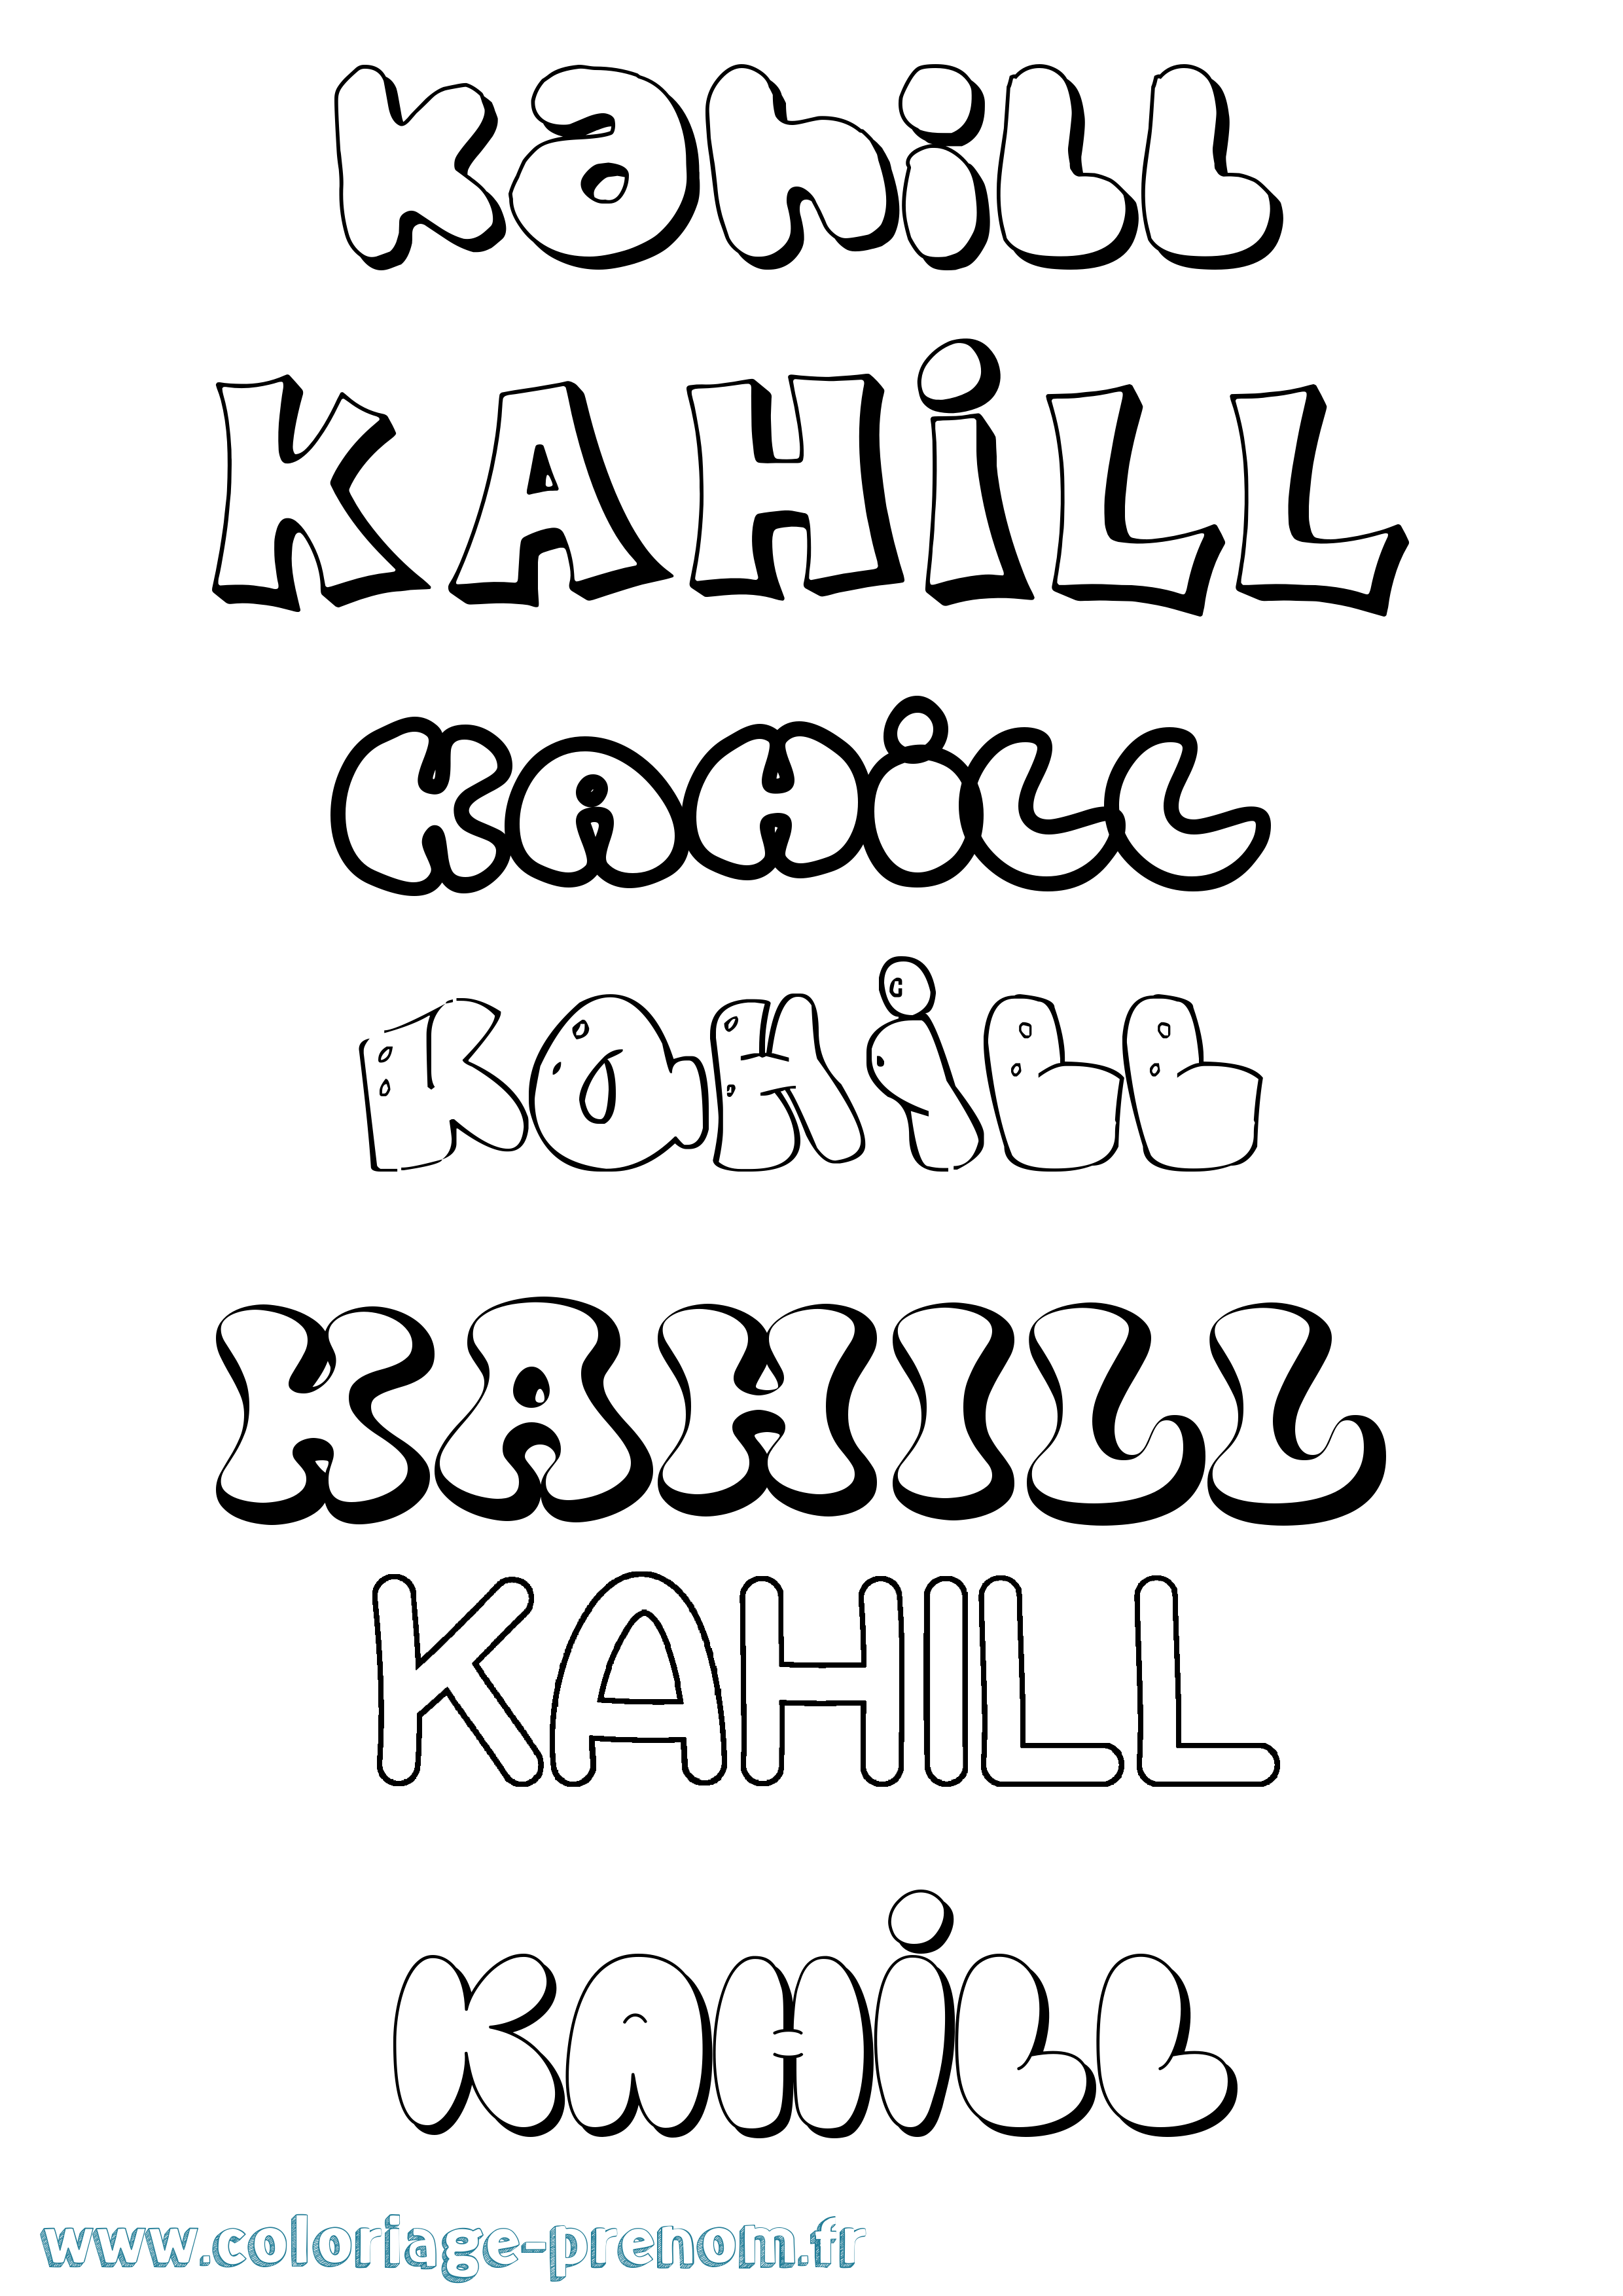 Coloriage prénom Kahill Bubble